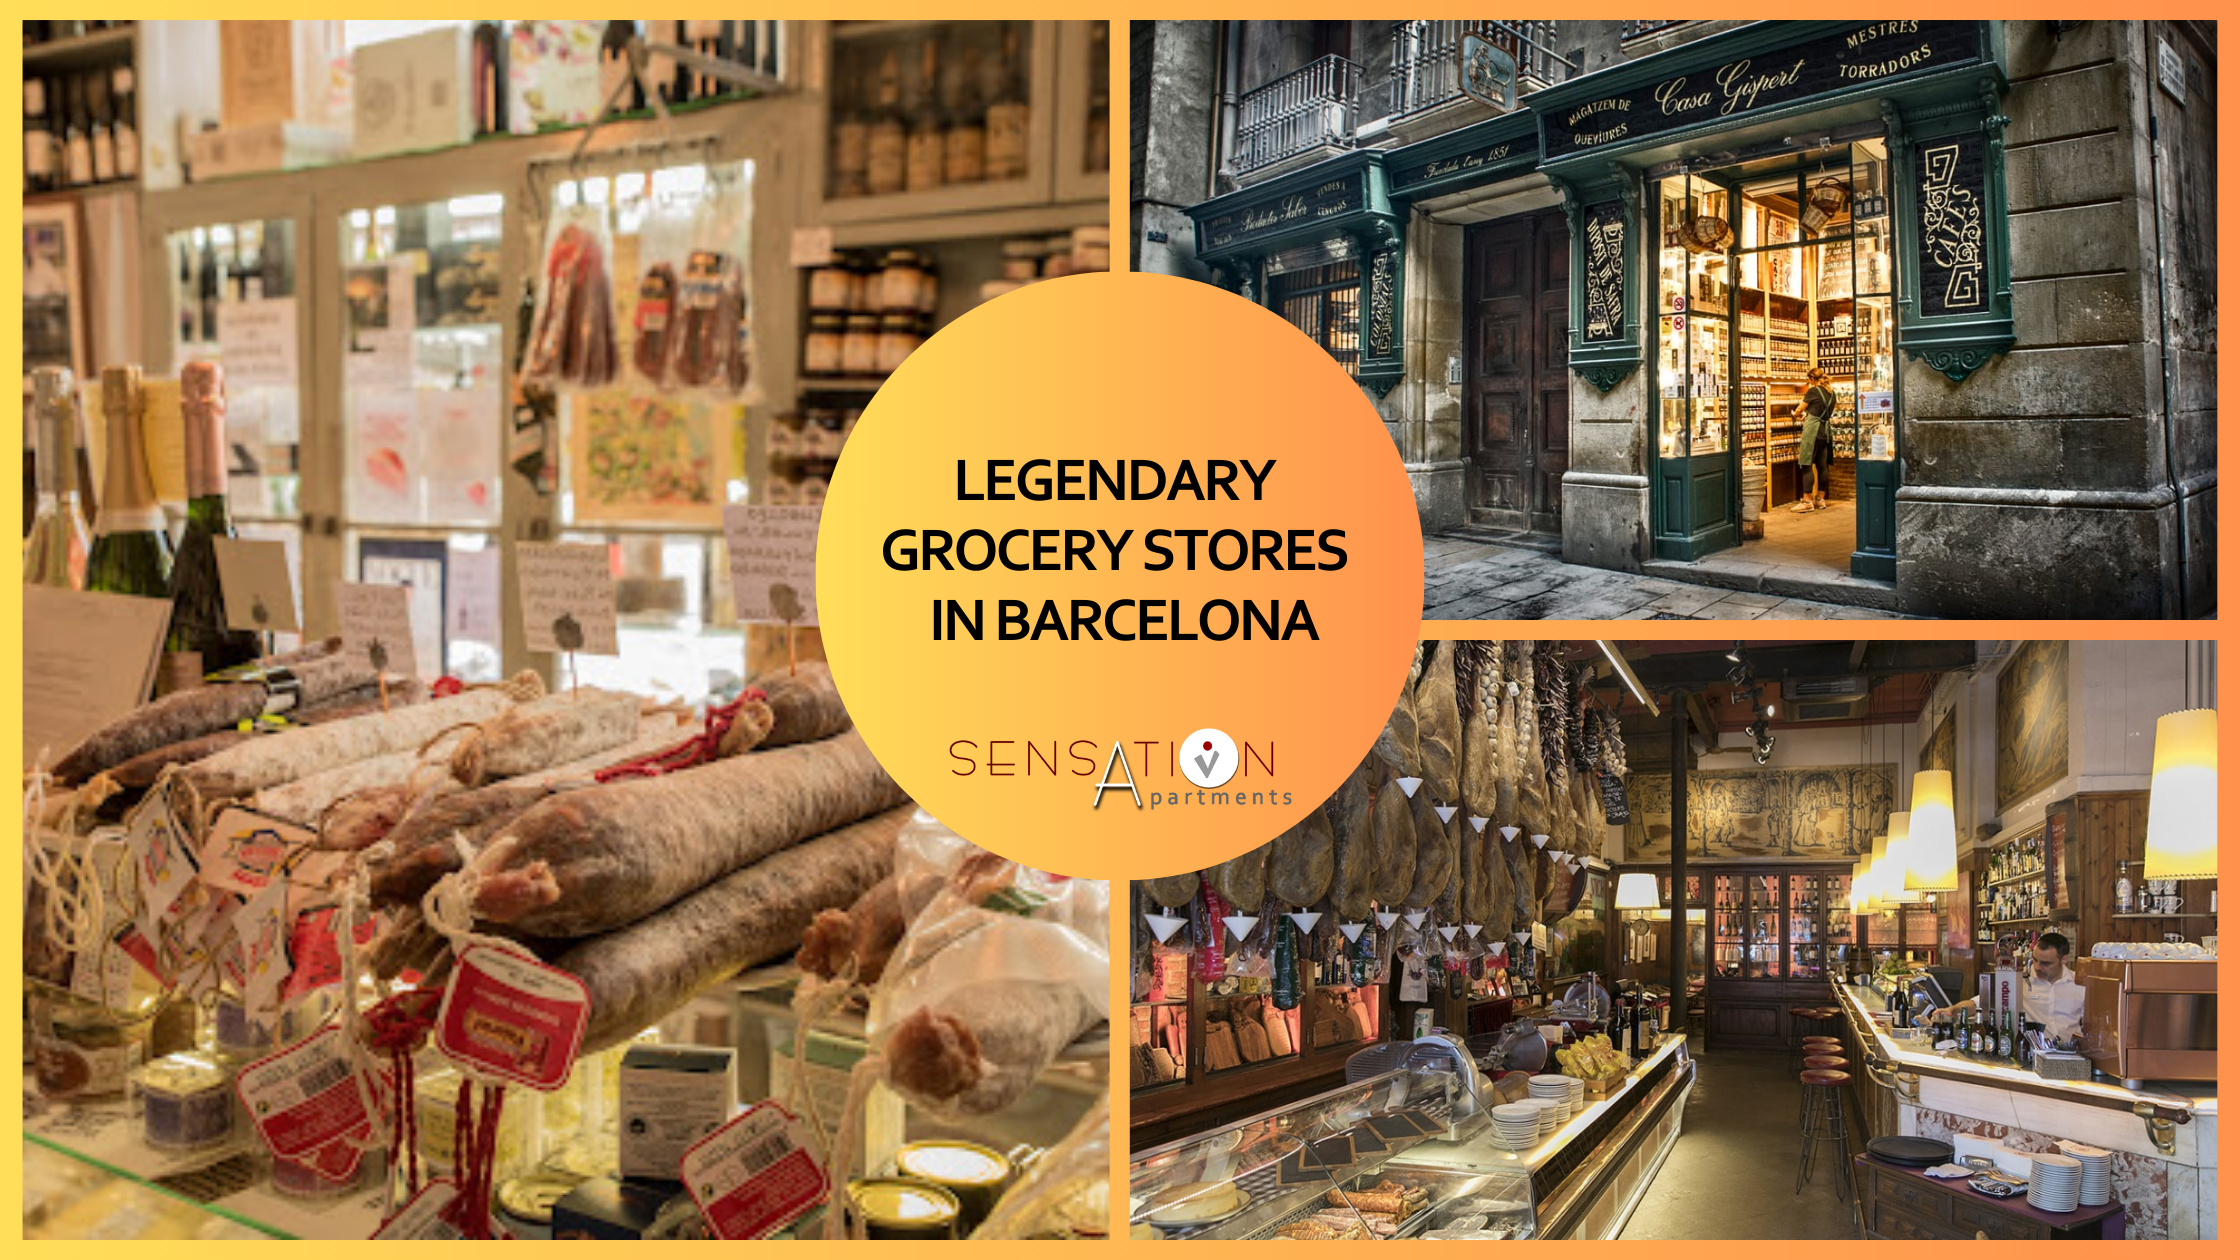 ein Collage aus Bildern von legendären Lebensmittelgeschäften in barcelona